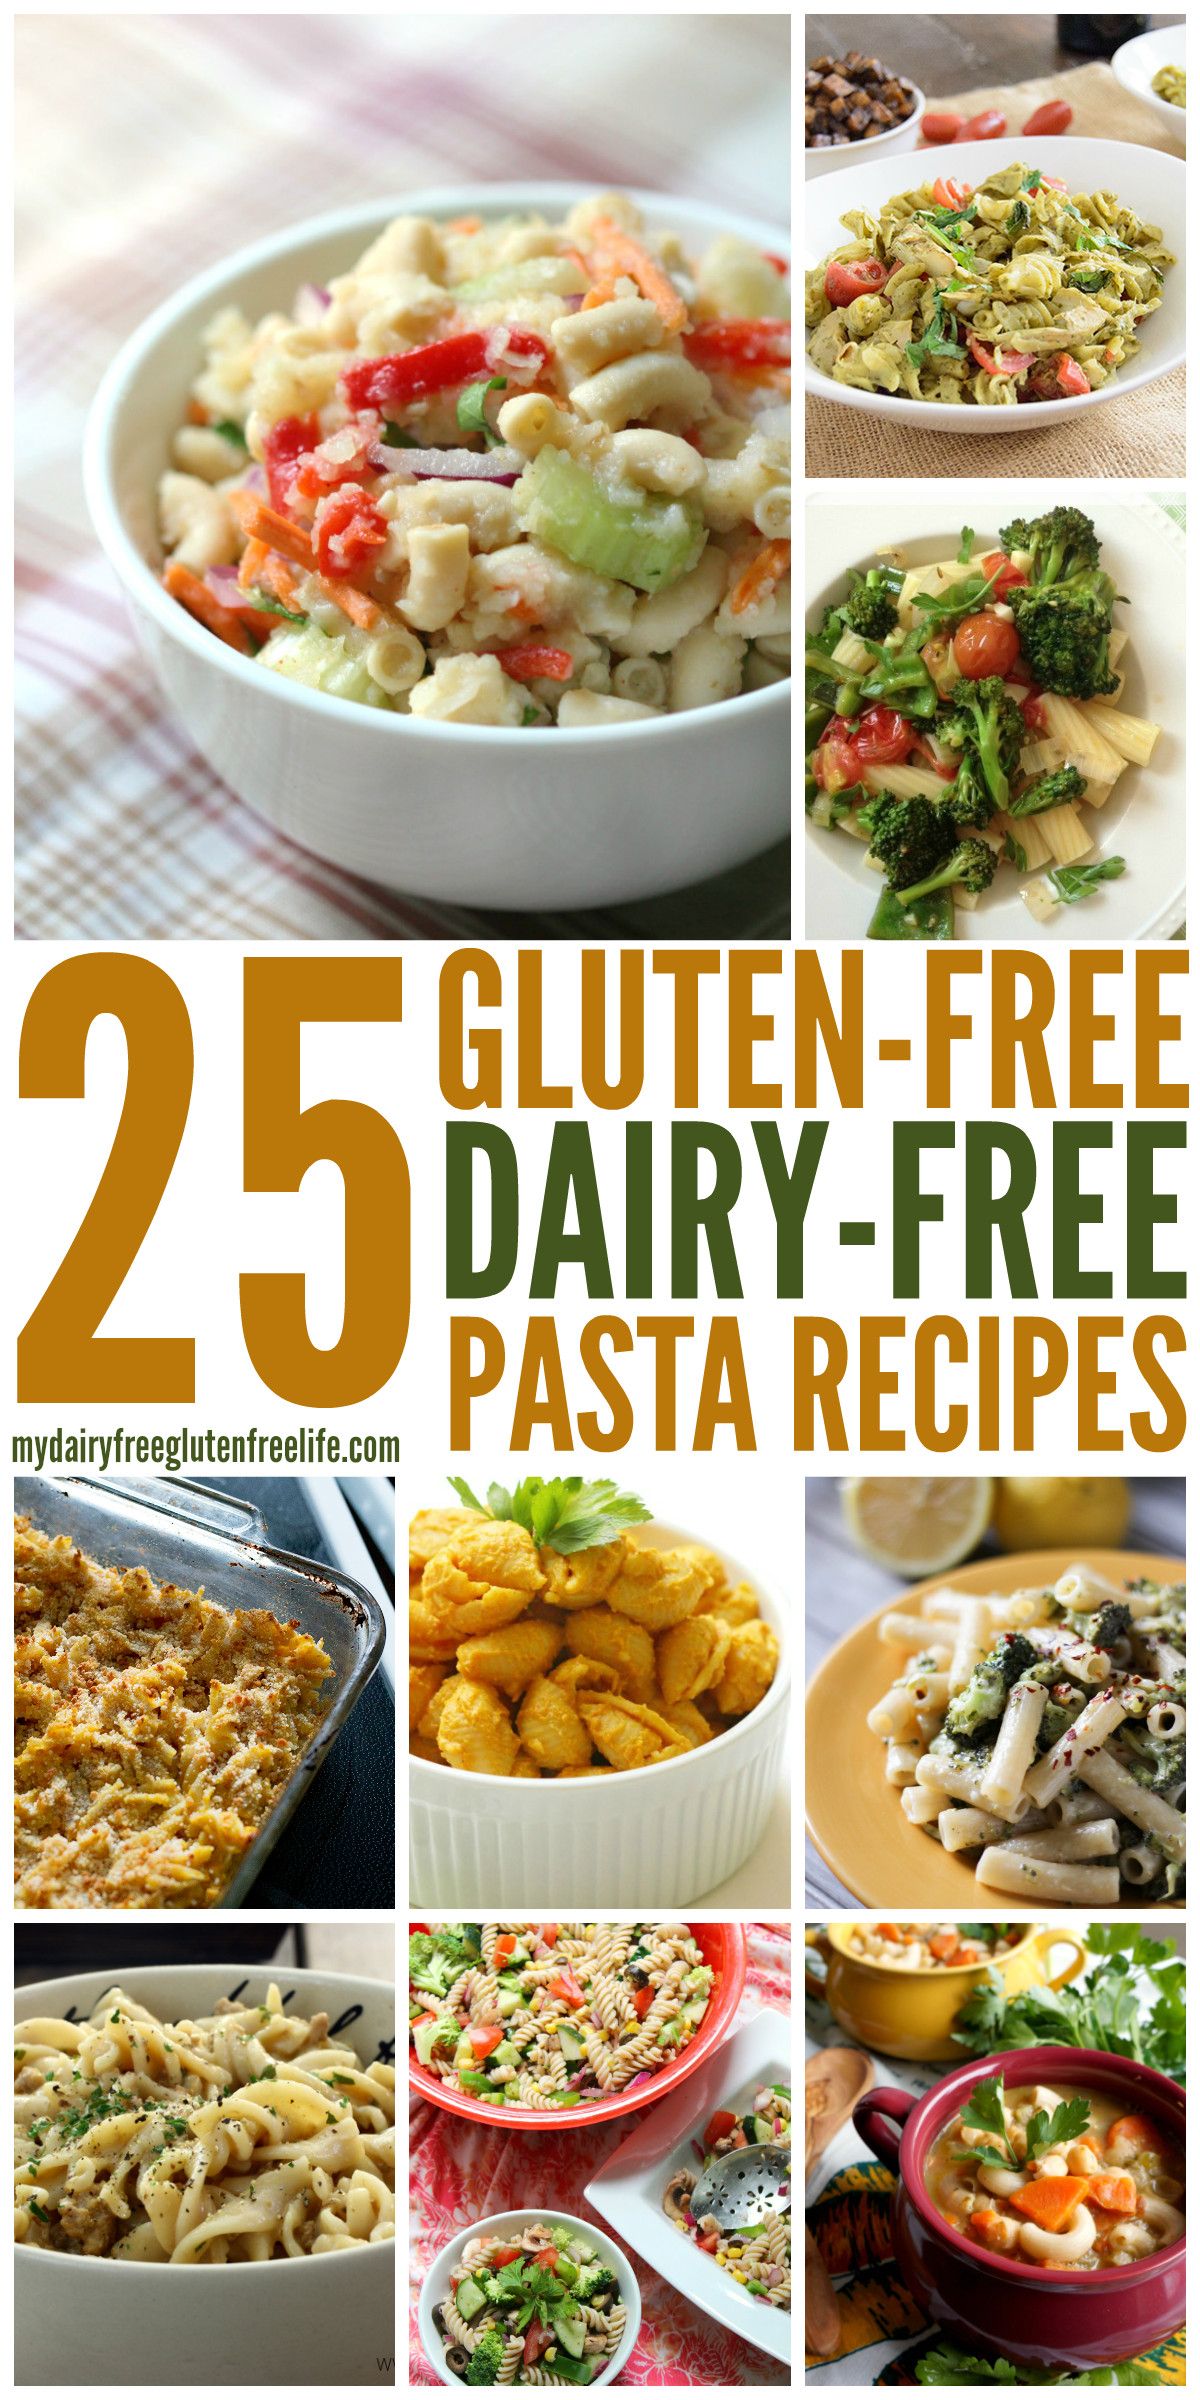 Gluten Free Food Recipes
 Gluten Free Pasta Dishes dairyfree My DairyFree